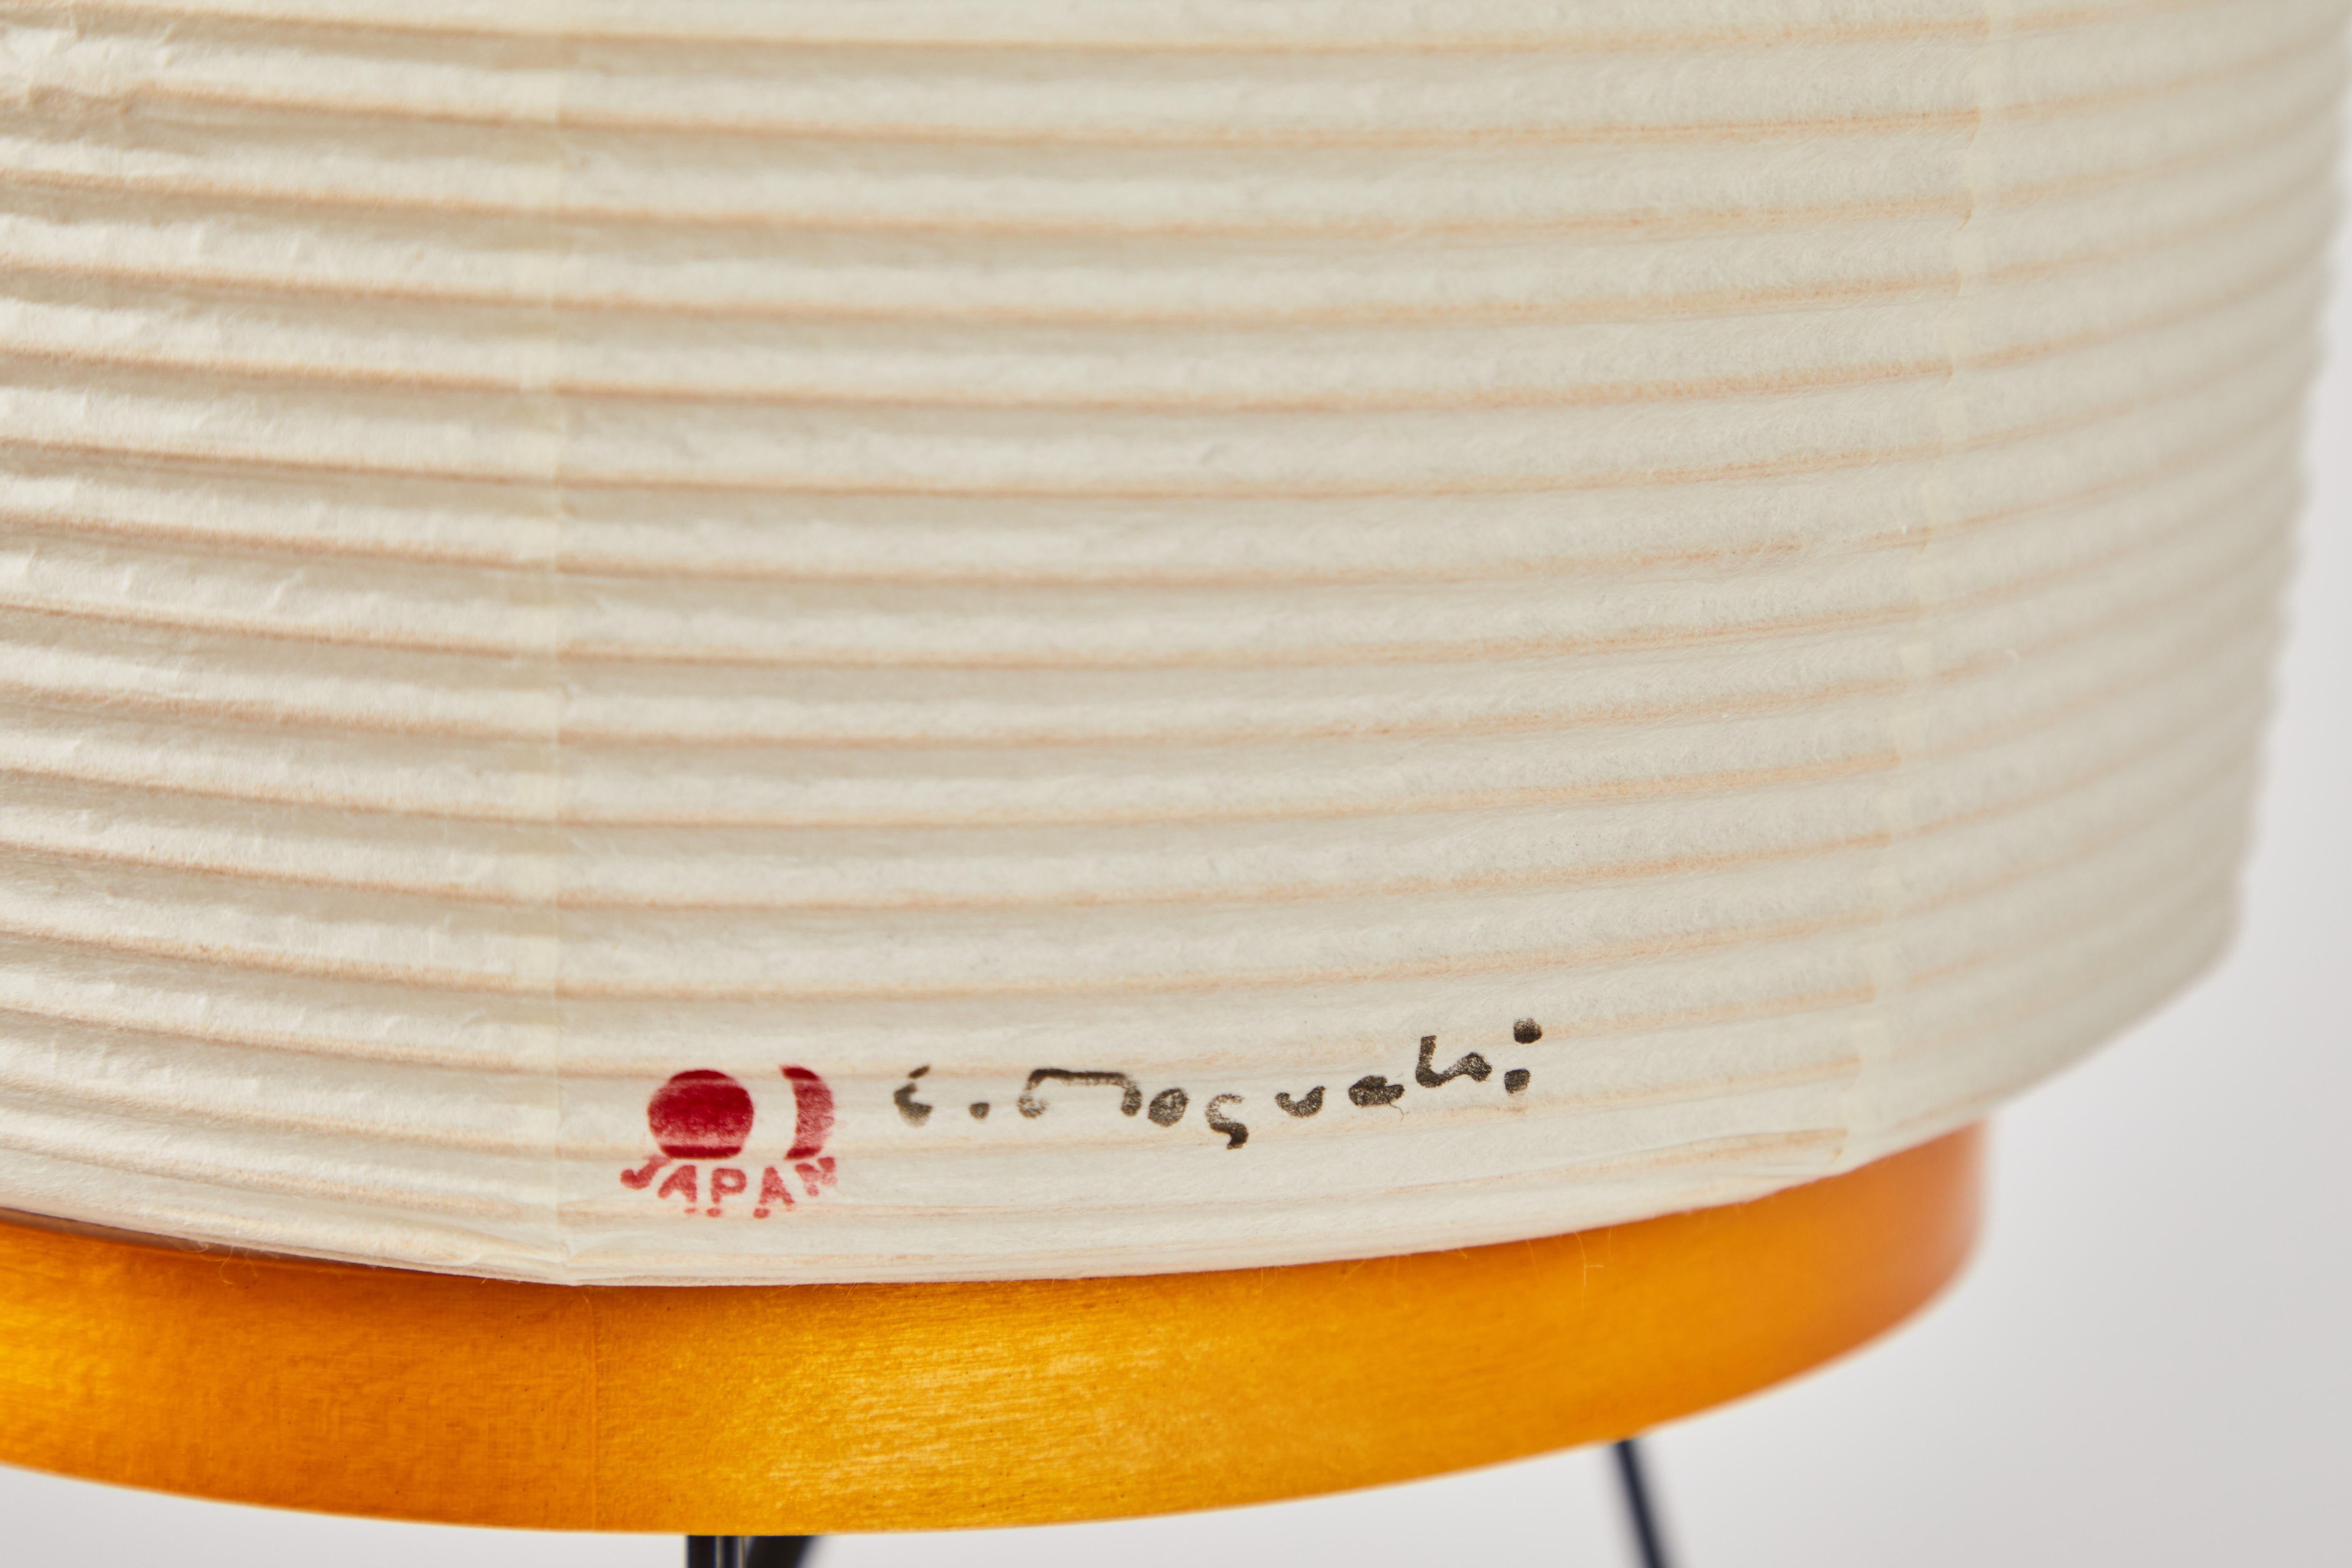 Akari Modell 2A Lichtskulptur von Isamu Noguchii. Der Schirm ist aus handgeschöpftem Washi-Papier:: Holz und Bambusrippen mit authentischem Noguchi Akari Herstellerstempel gefertigt. Die Akari-Lichtskulpturen von Isamu Noguchi gelten als Ikonen des